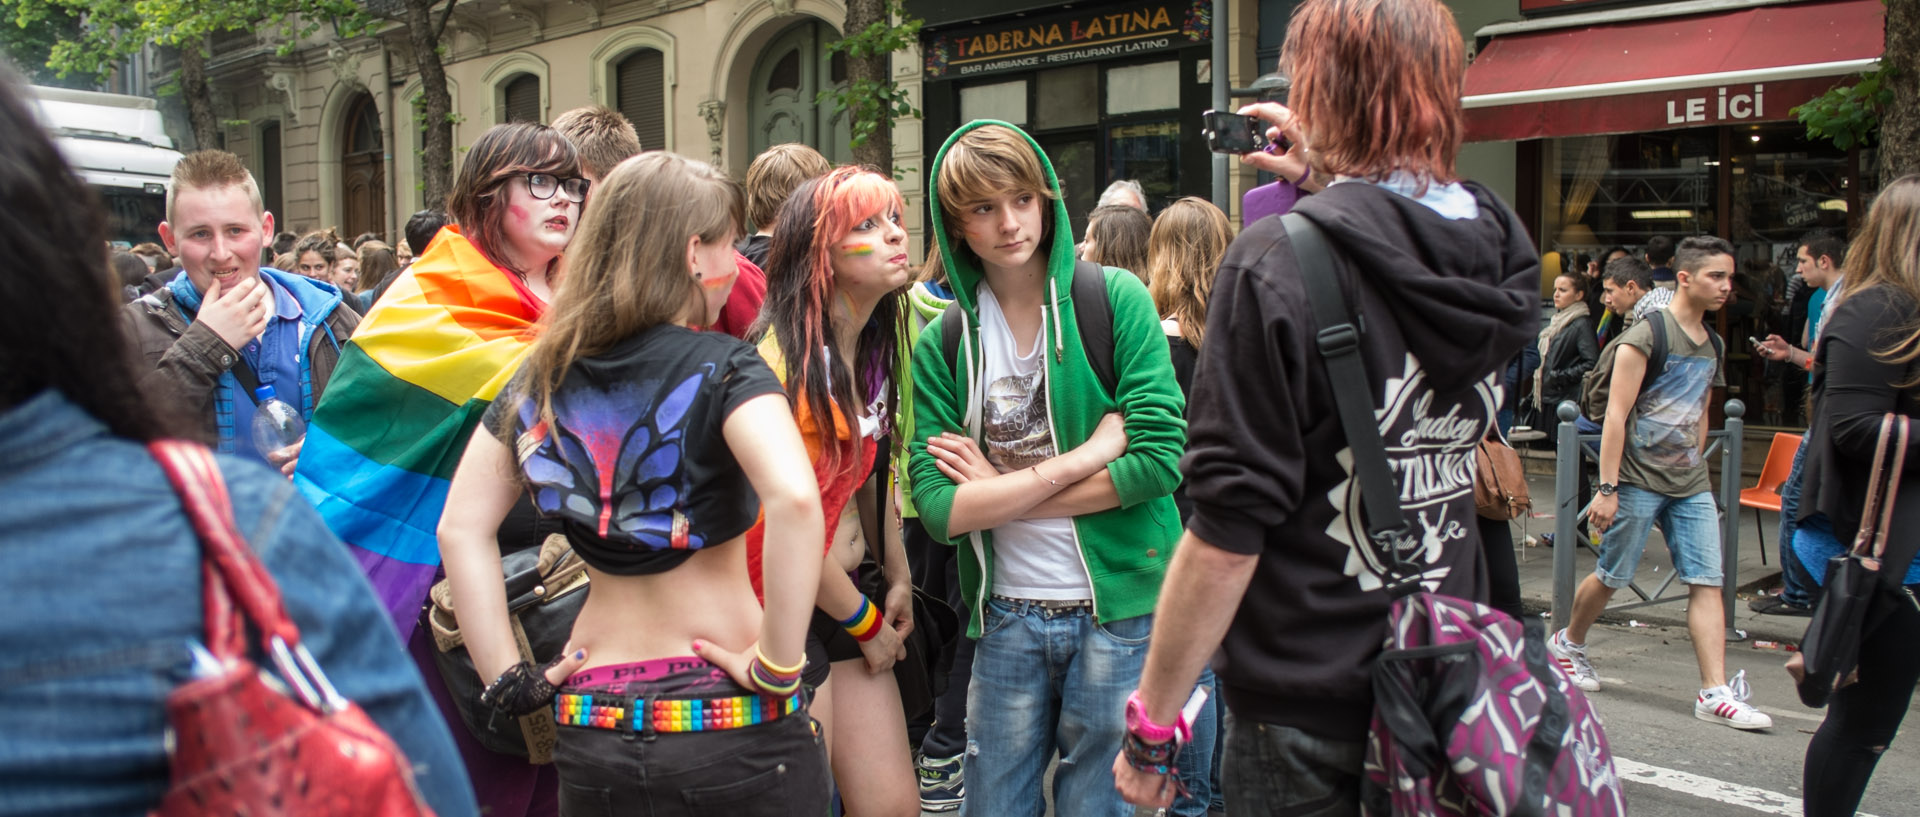 Samedi 1er juin 2013, 17:01, défilé de la lesbian et gay pride, rue Inkermann, Lille